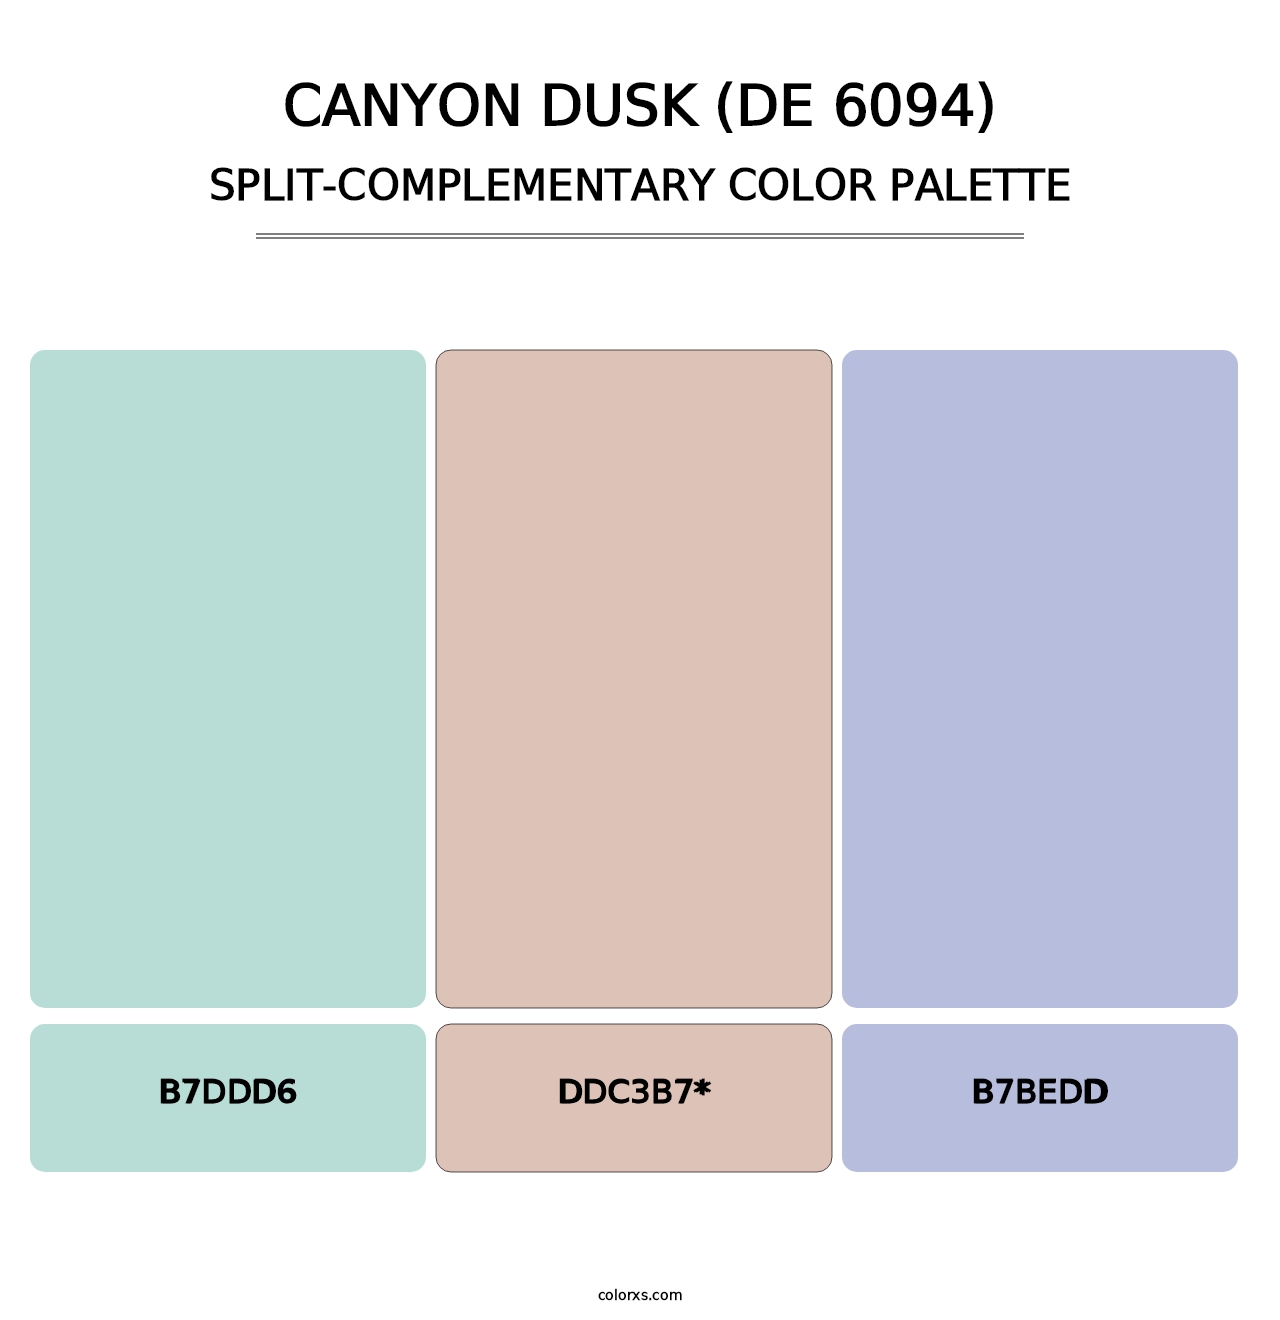 Canyon Dusk (DE 6094) - Split-Complementary Color Palette